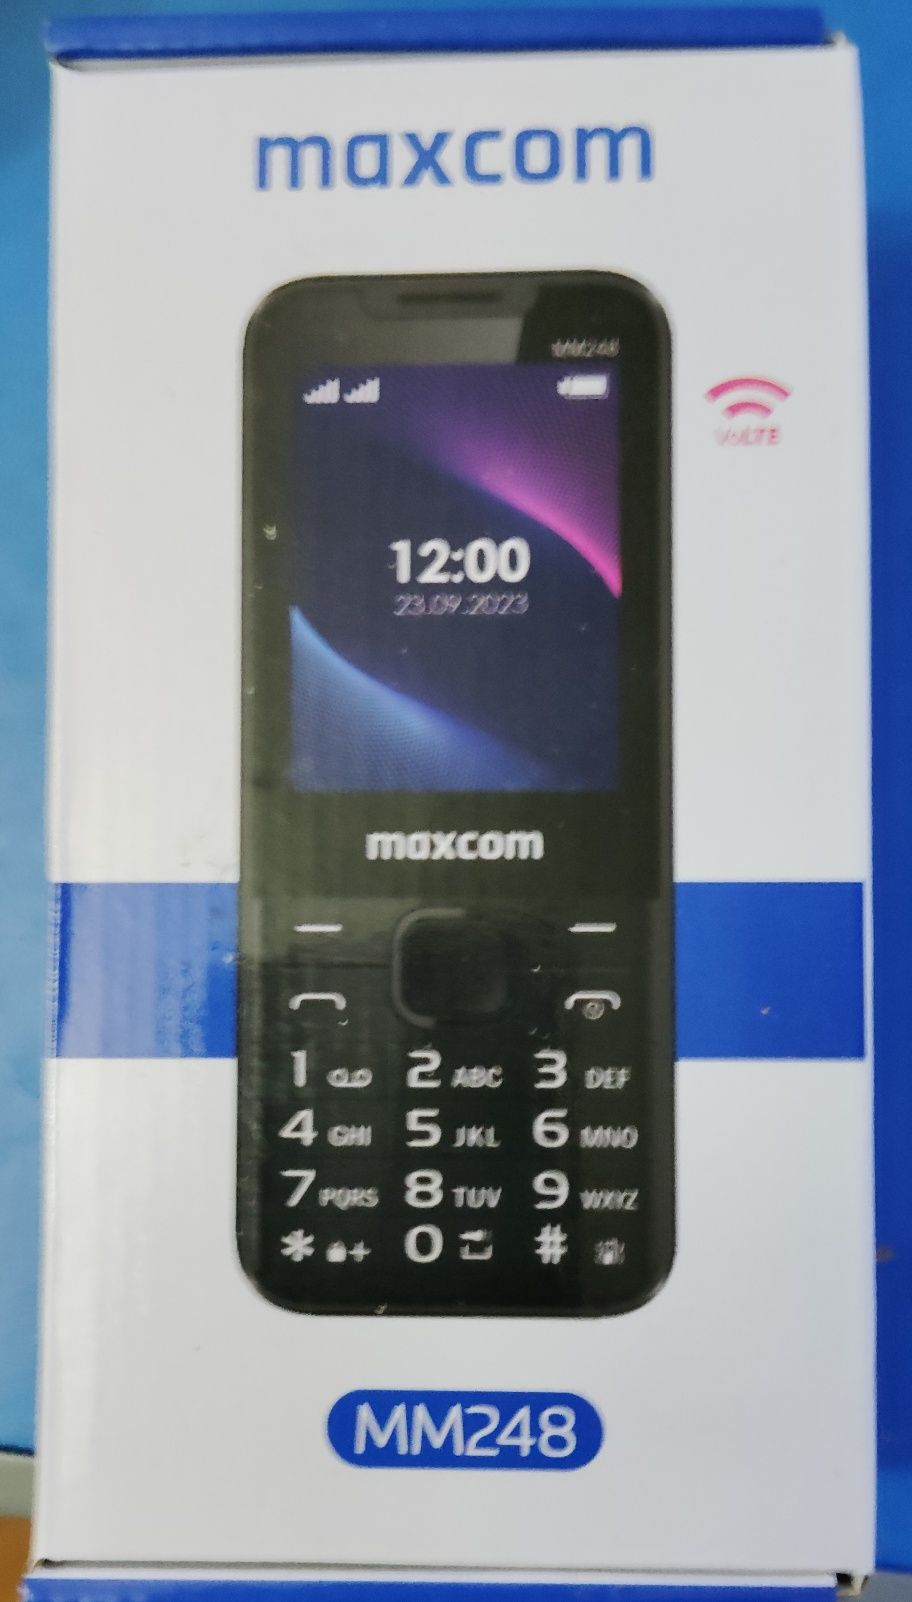 Telefon Maxcom MM 248 cu taste